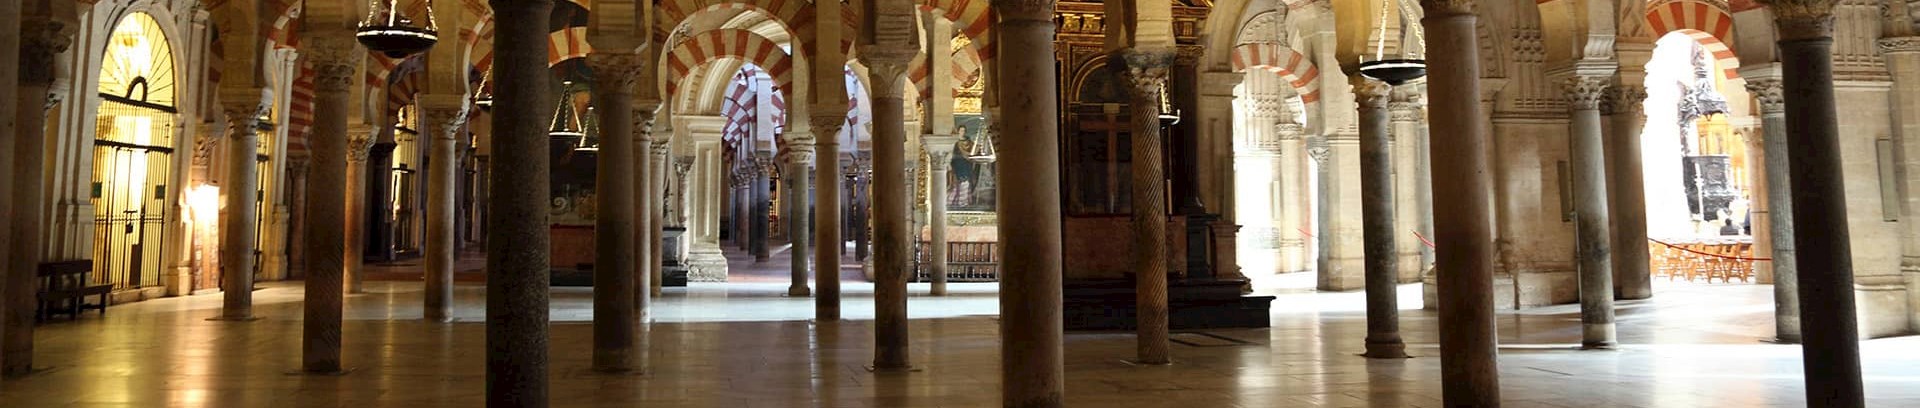 Billede fra katedral i Córdoba i Sydspanien